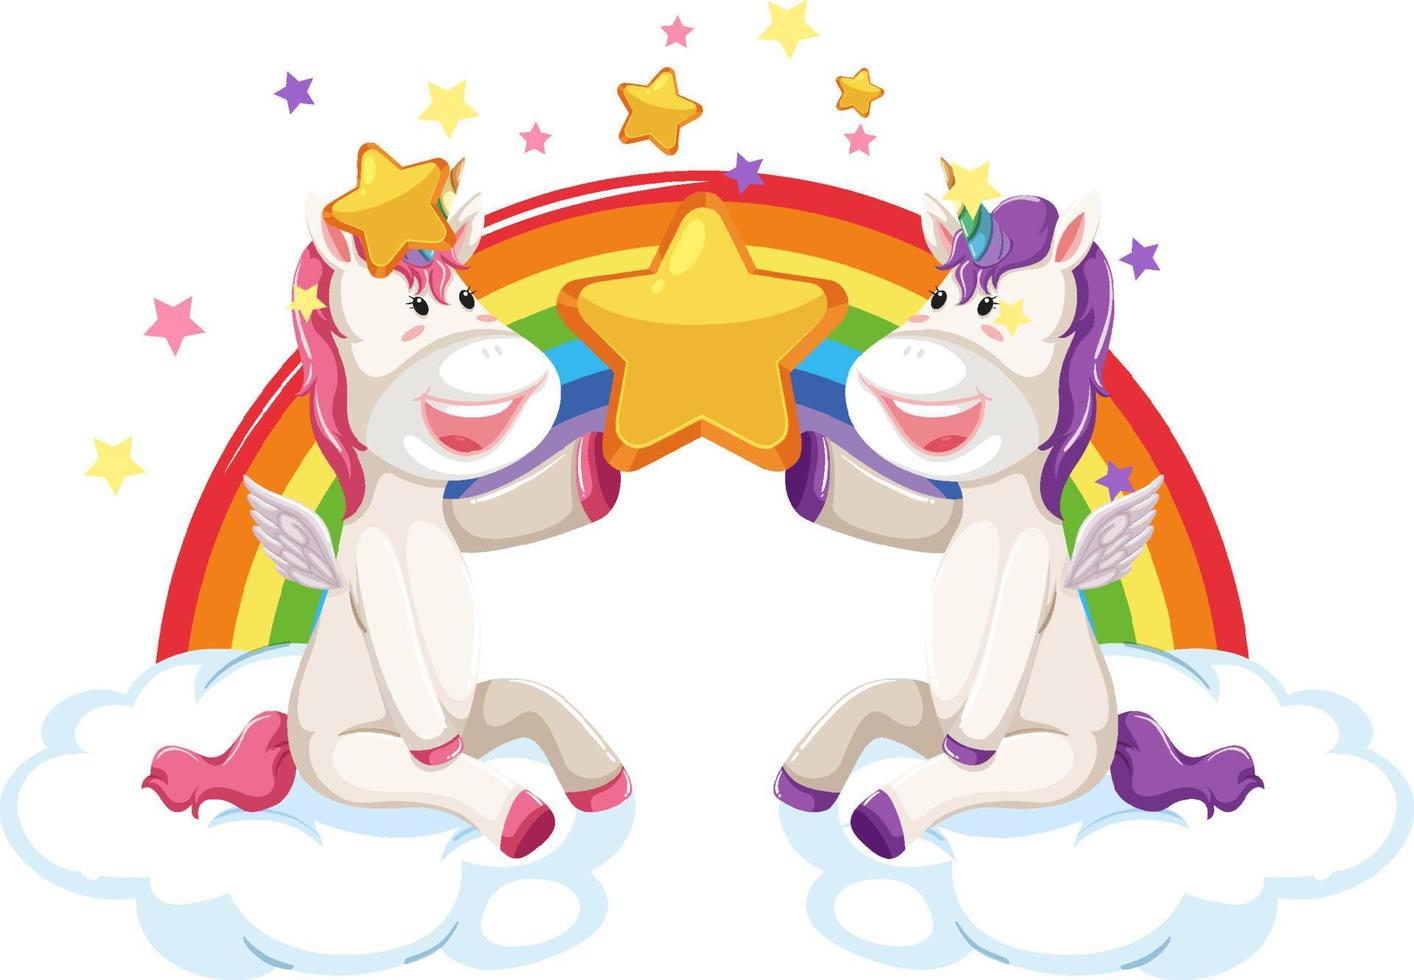 due simpatici unicorni seduti sulle nuvole con arcobaleno vettore